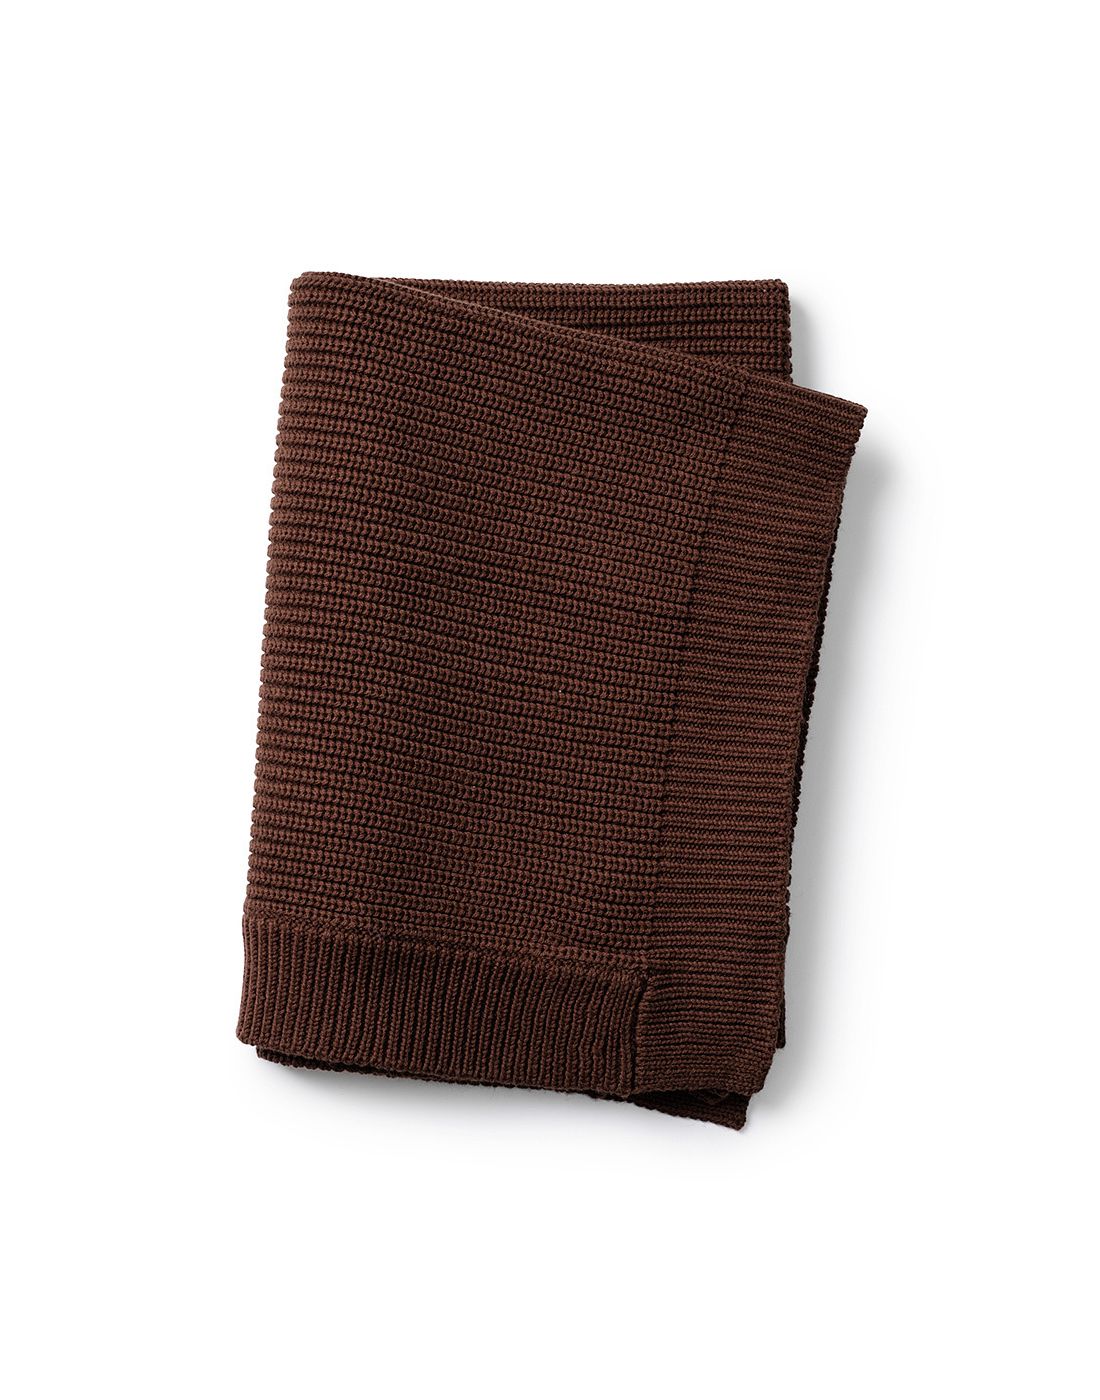 Βρεφική Κουβέρτα Elodie Details Wool Knitted Chocolate